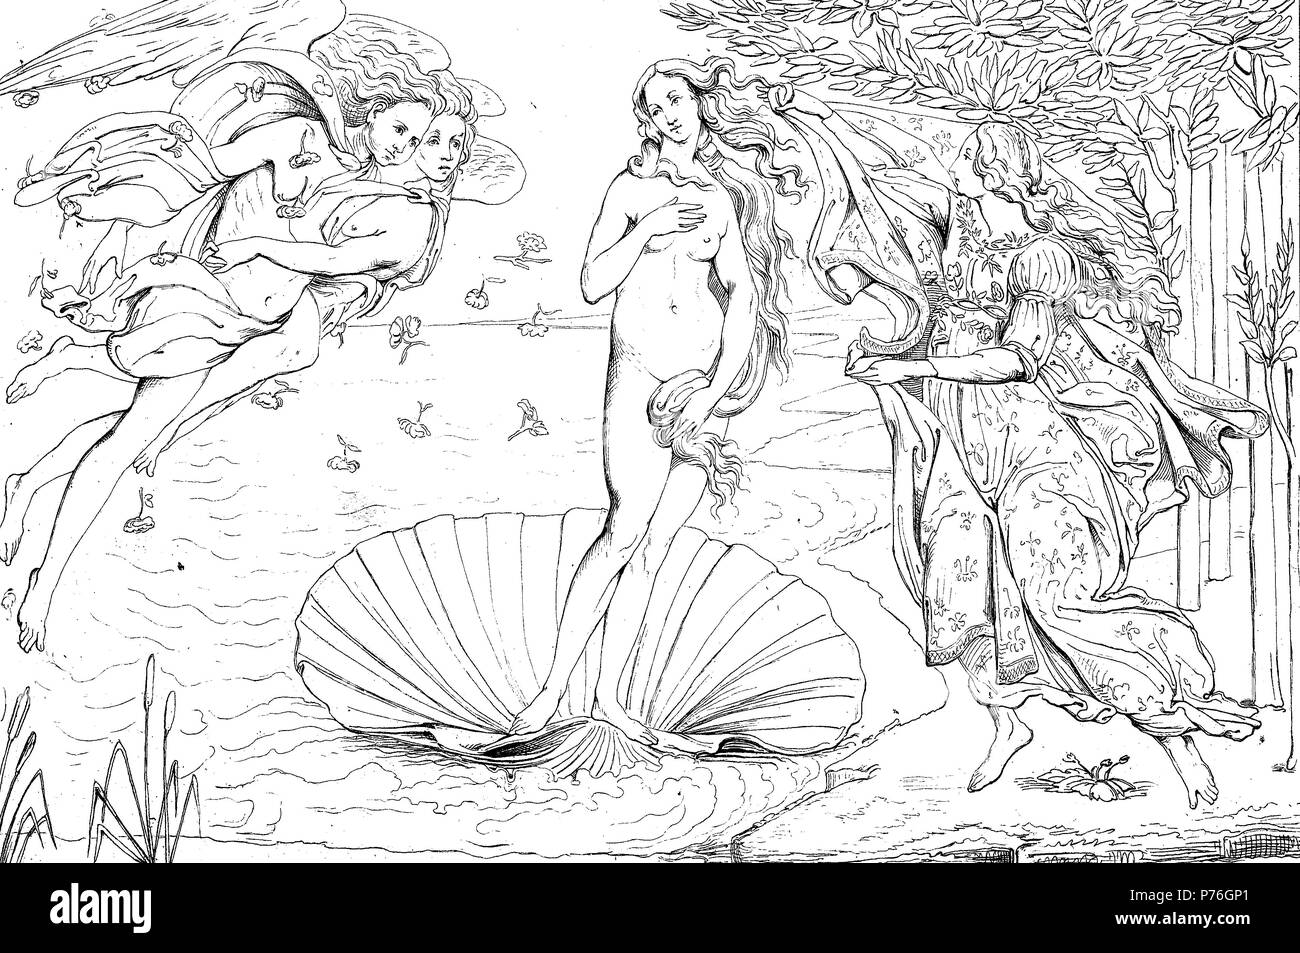 La Naissance de Vénus est un tableau de l'artiste italien Sandro Botticelli, numérique l'amélioration de la reproduction de l'original d'imprimer à partir de l'année 1881 Banque D'Images